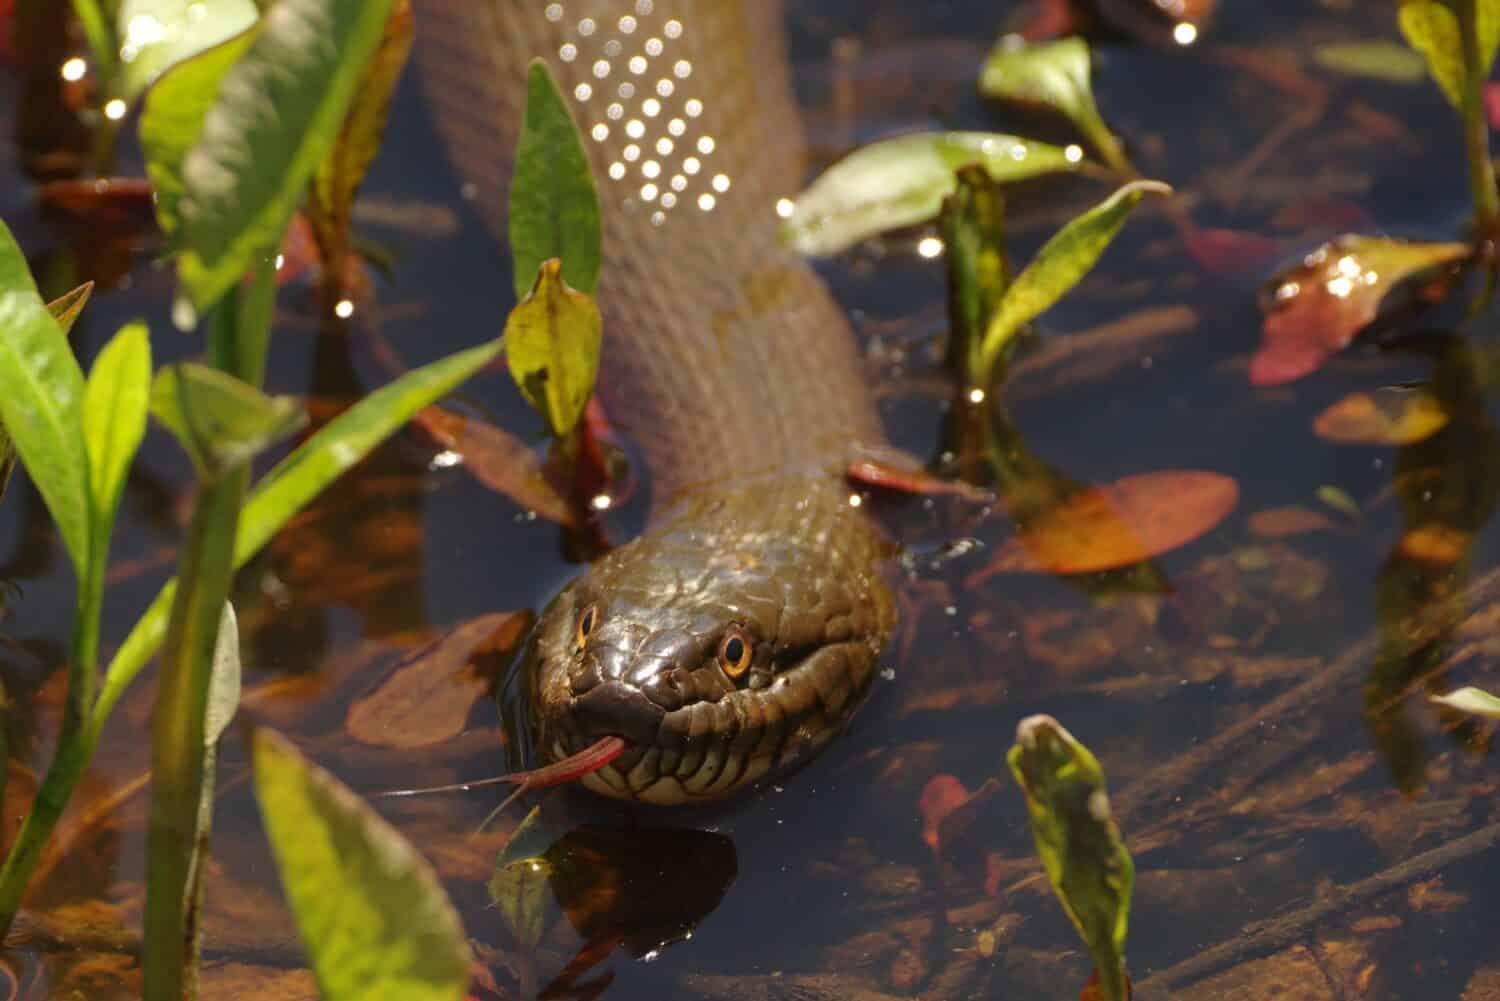   Un'inquadratura ravvicinata di un serpente d'acqua che nuota in uno stagno.